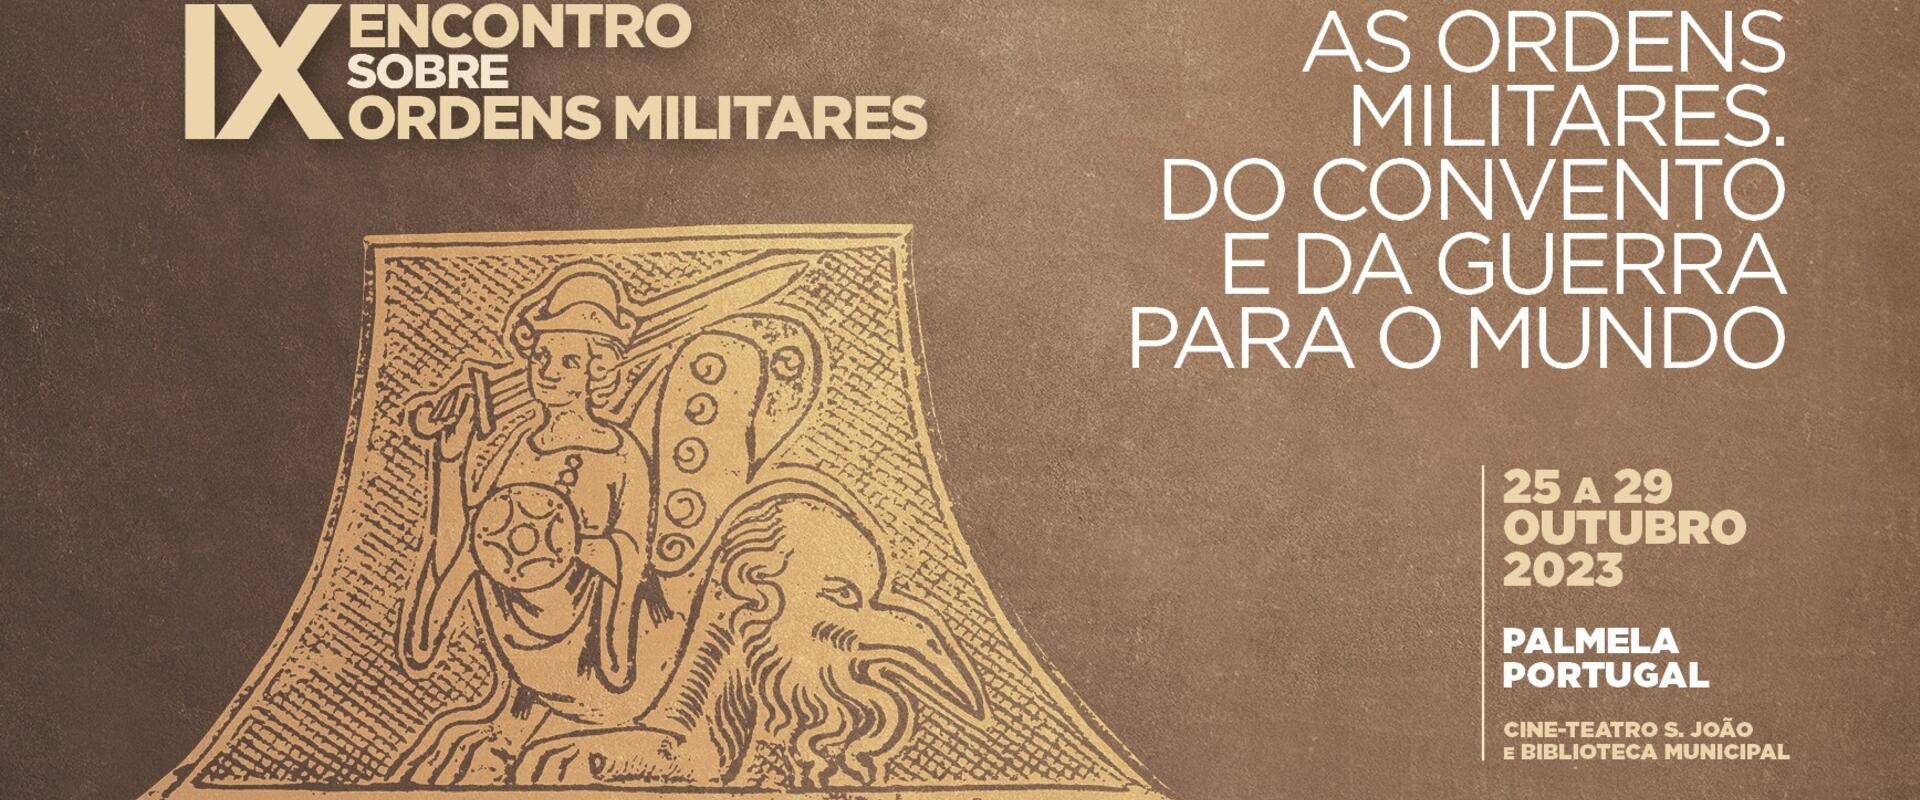 ix_ordens_militares_banner_cmp_noticia_828x430px